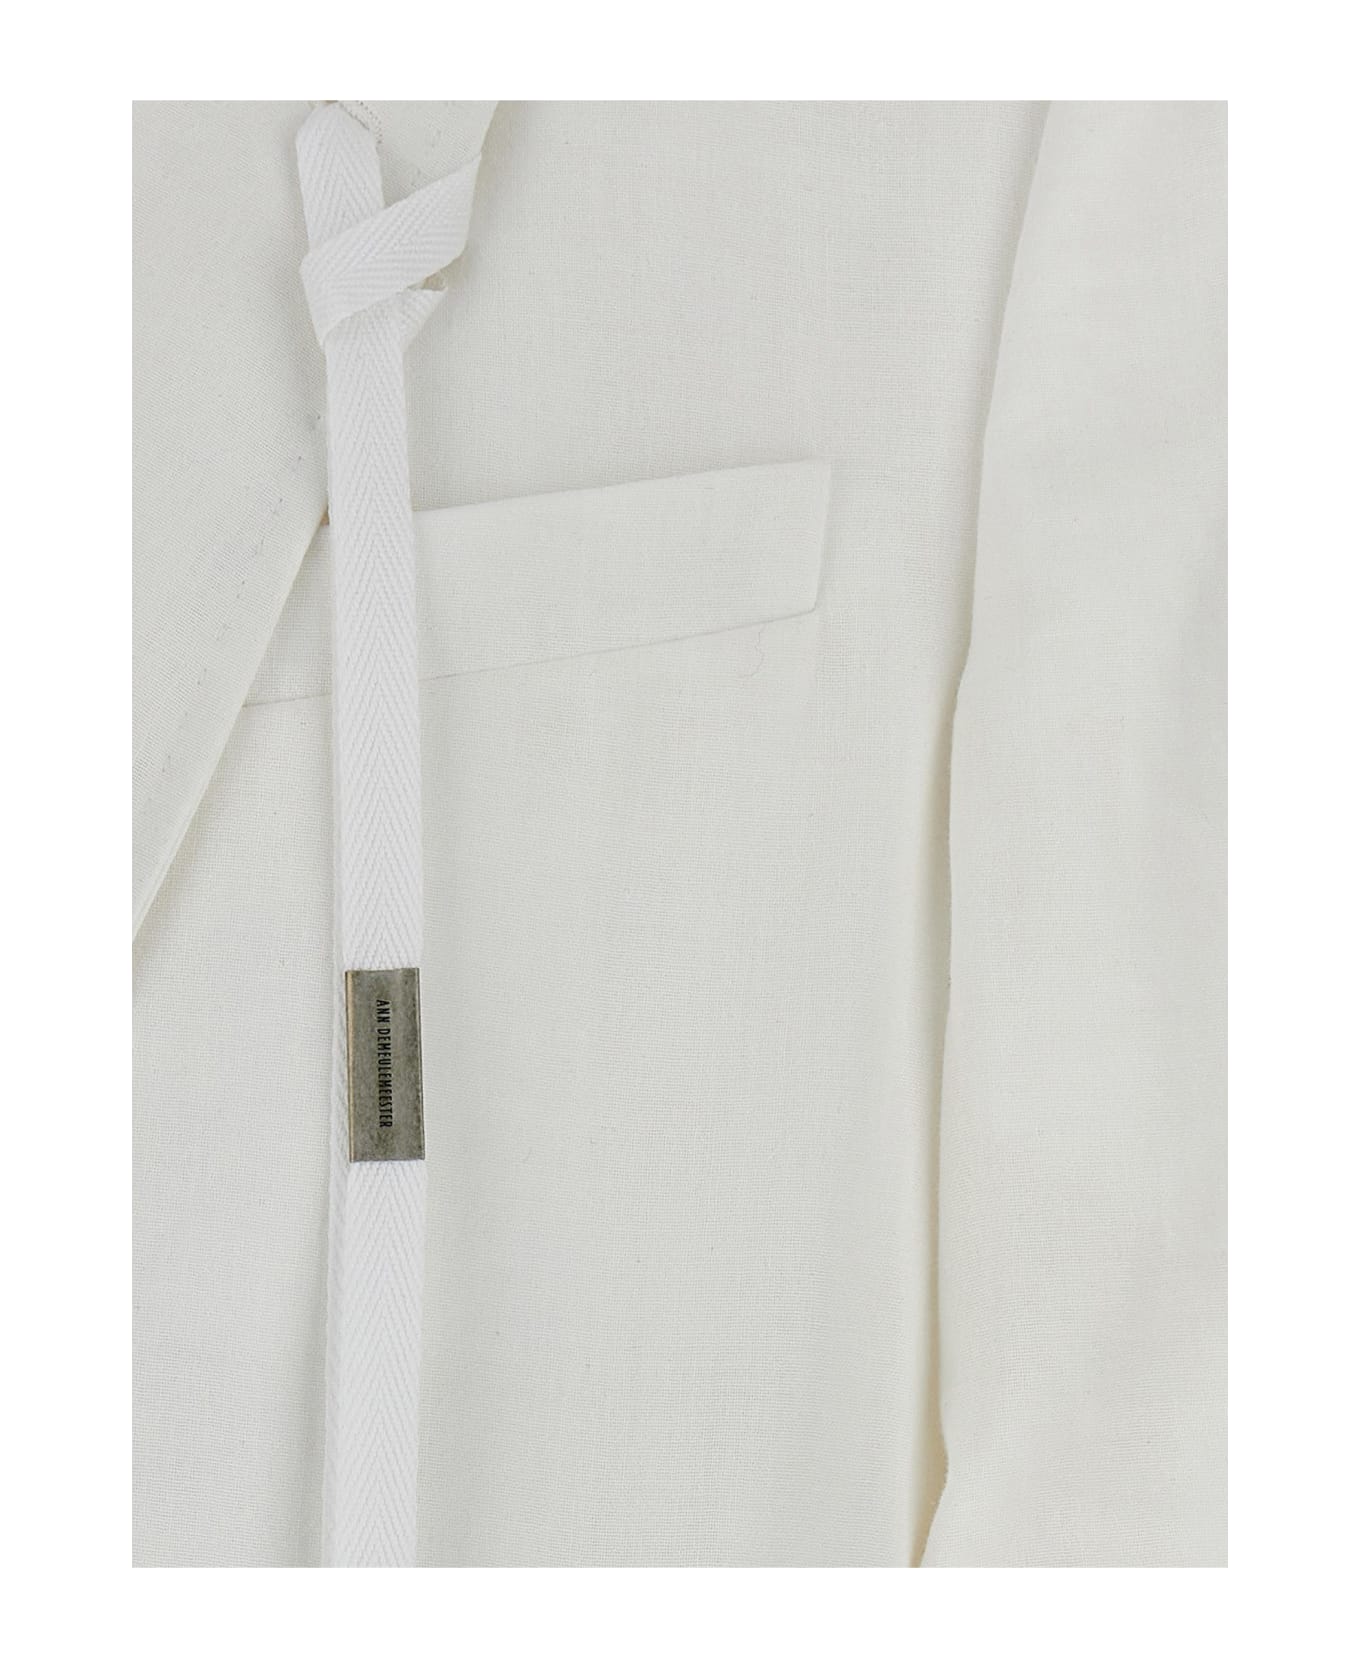 Ann Demeulemeester 'agnes' Blazer Jacket - White